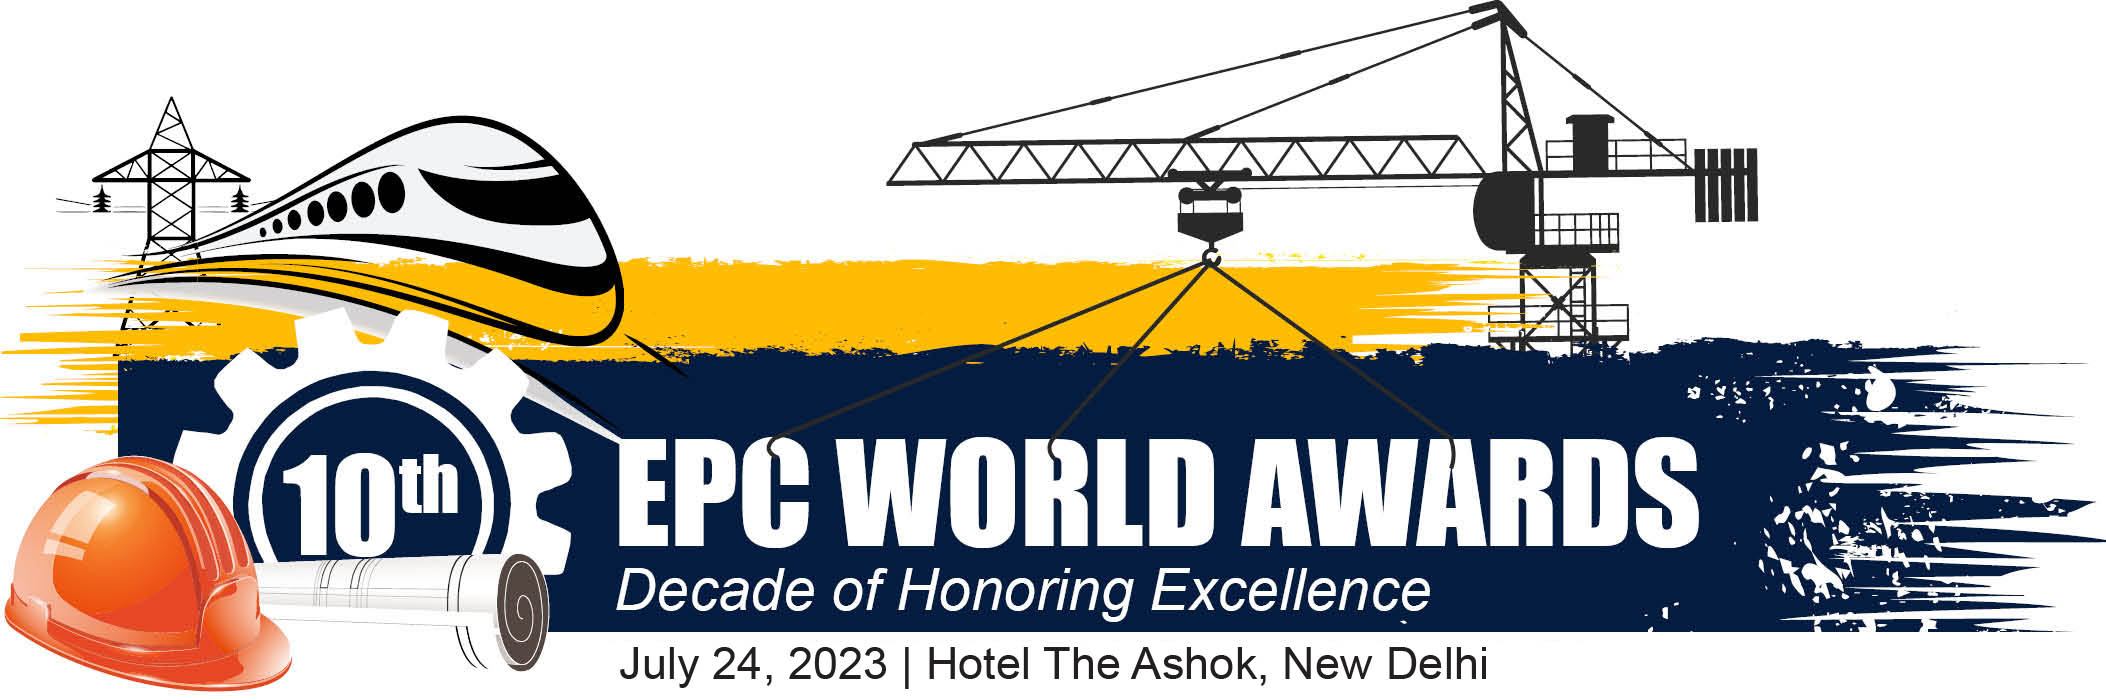 EPC World Awards